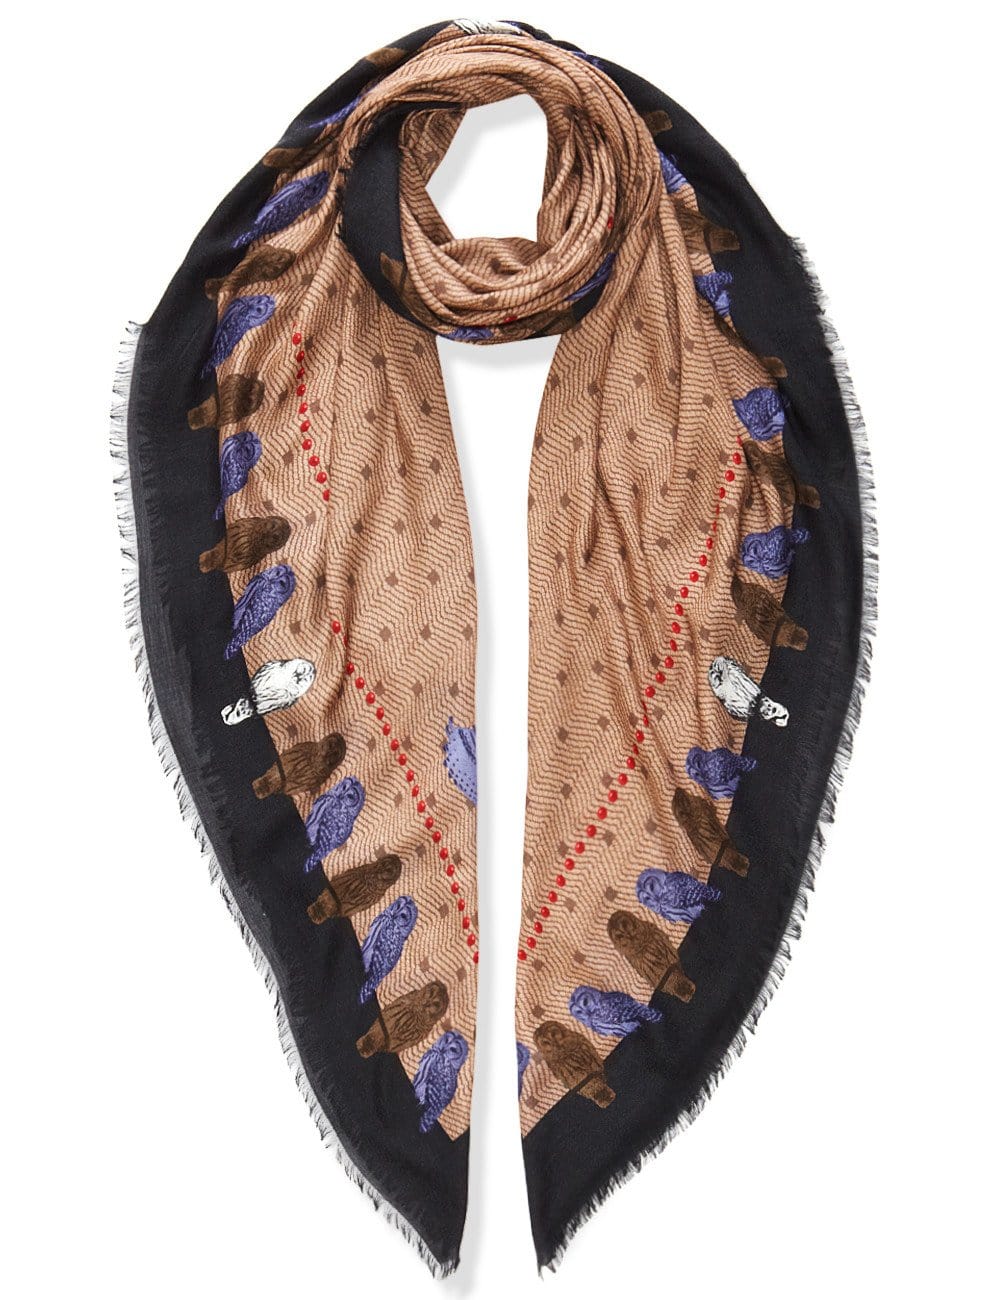 VASSILISA luxury scarves